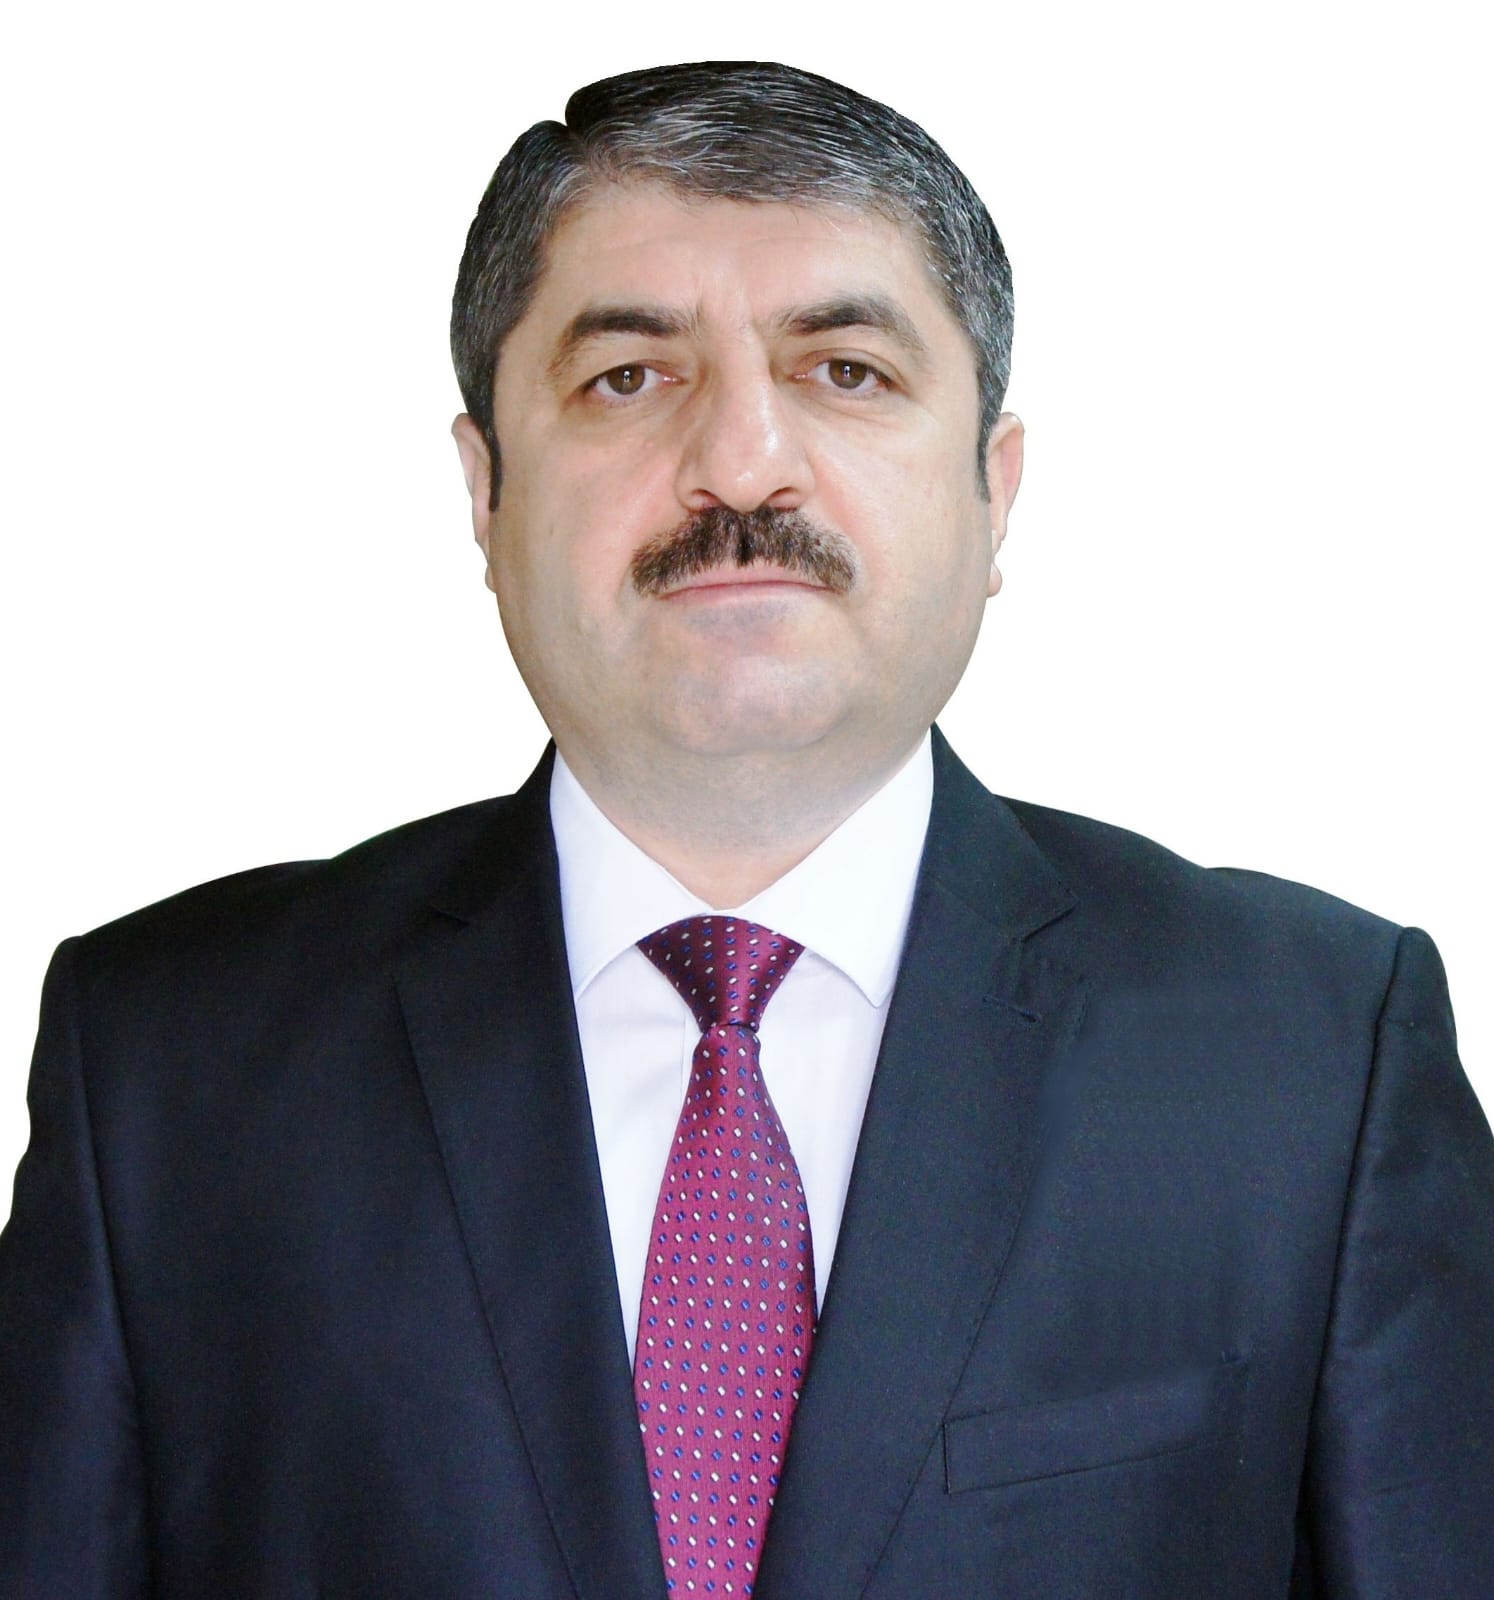 د.سيمور نصيروف يكتب يوم الاستقلال في أذربيجان